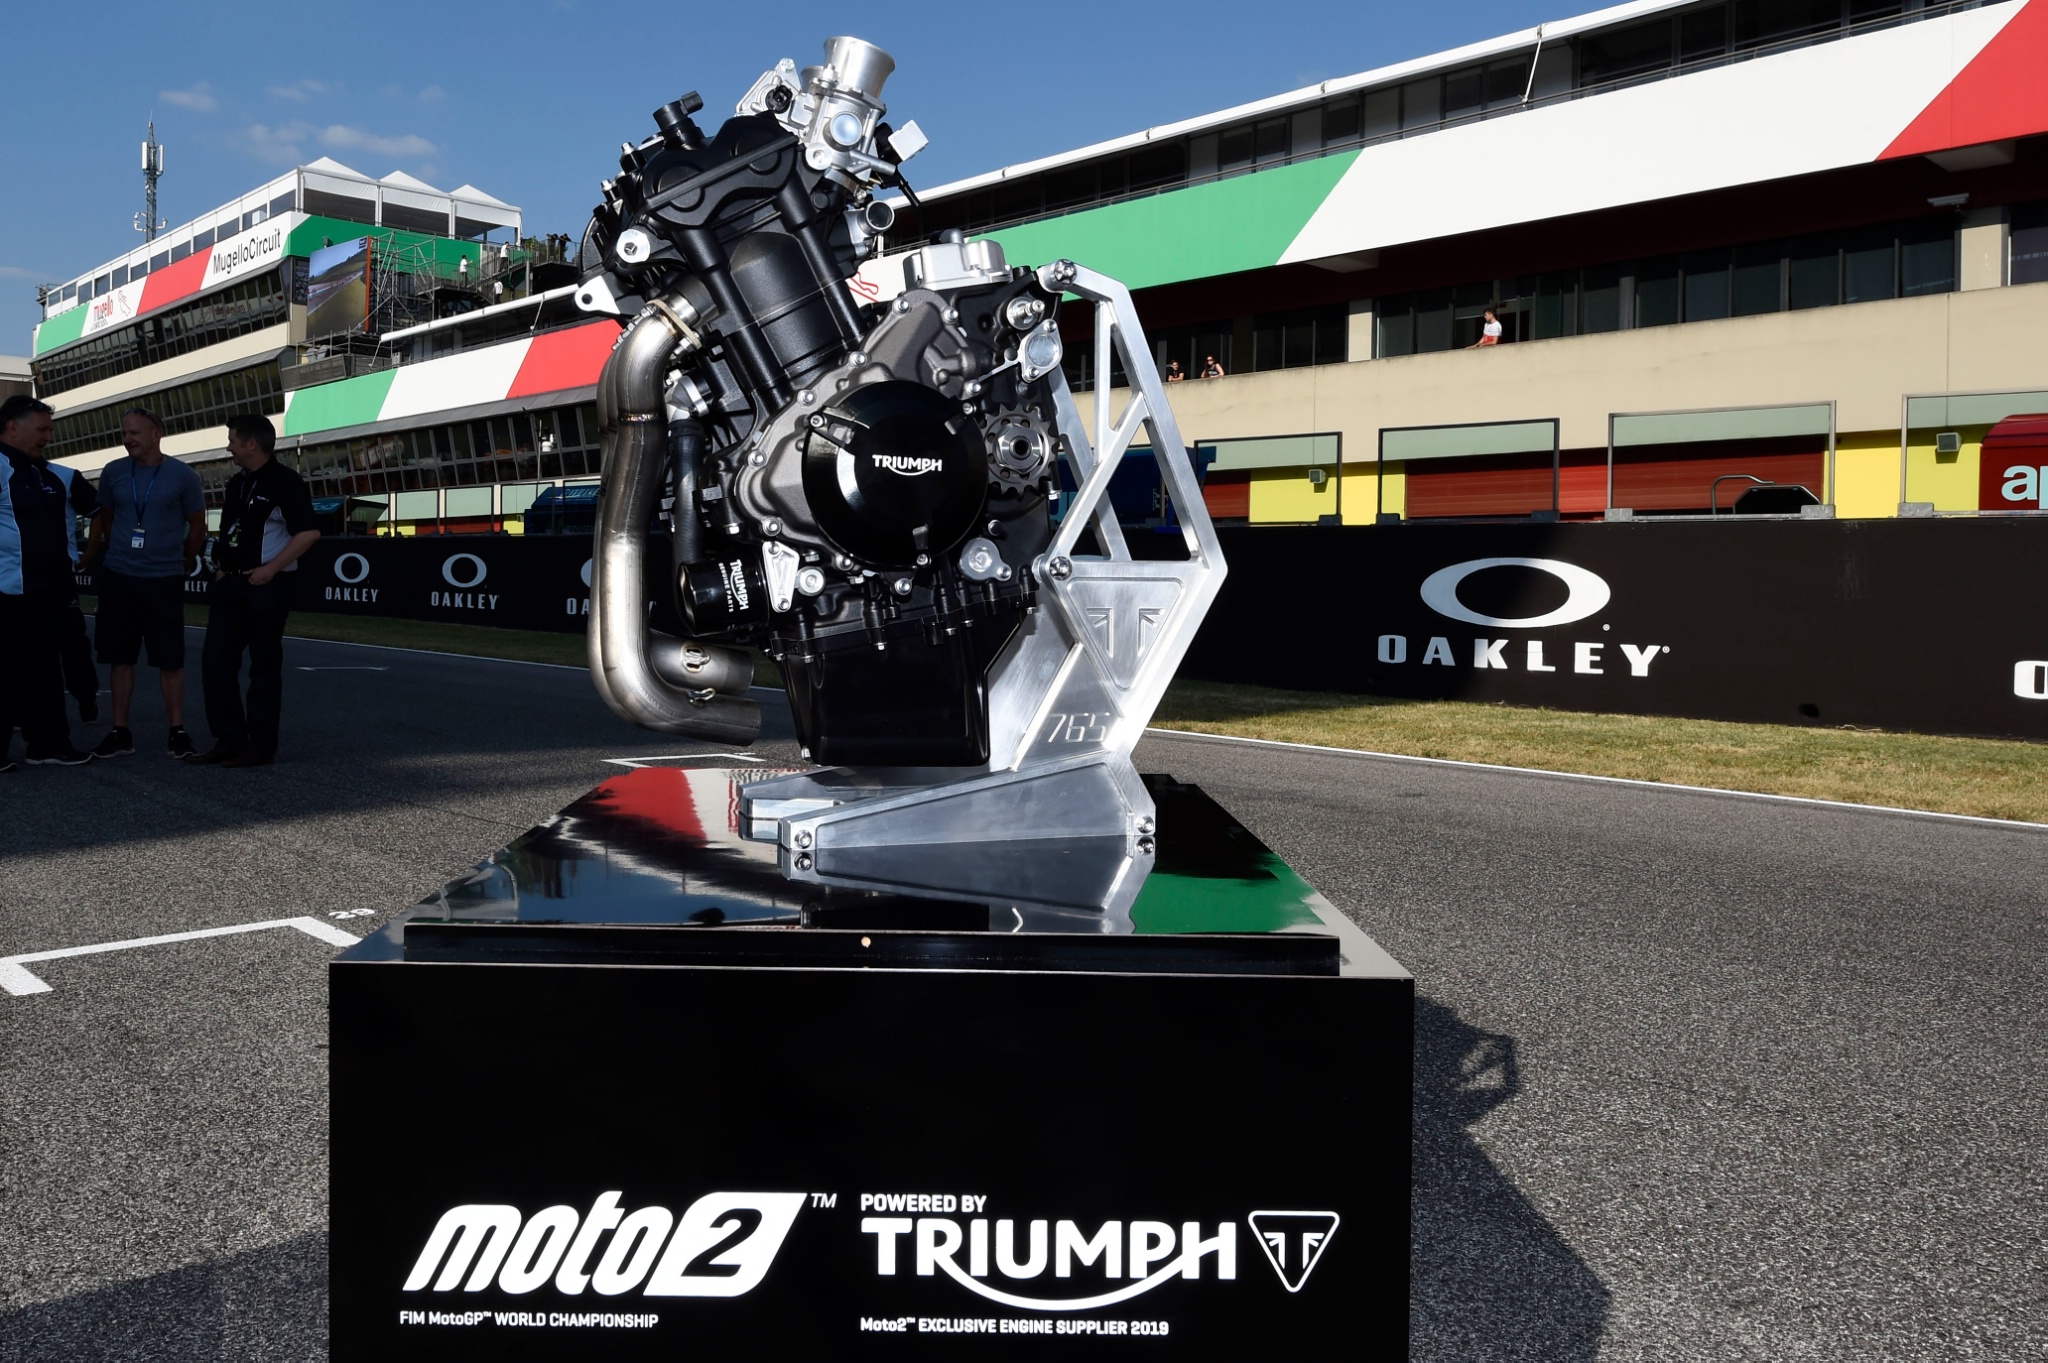 Triumph Moto2 engine supplier for 2019, Italian Moto2